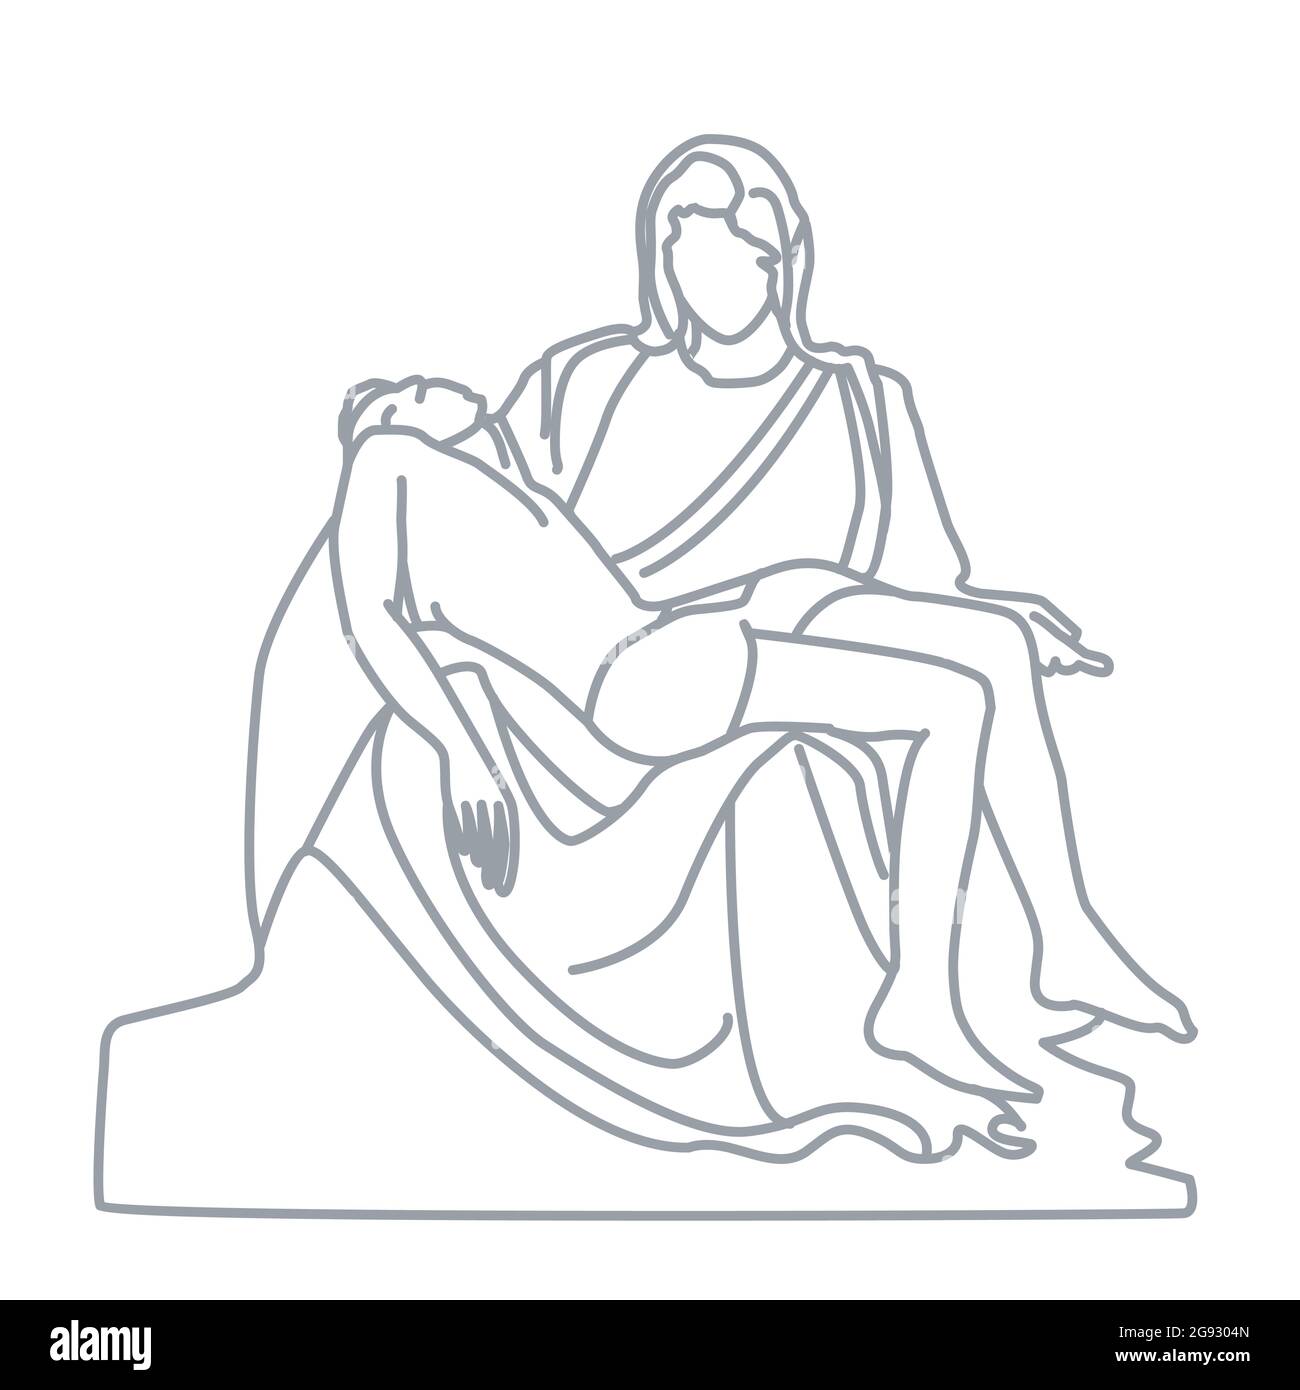 Sculpture de la Pieta par Michel-Ange située à la basilique Saint-Pierre. Cette célèbre œuvre d'art dépeint le corps de Jésus sur le bord de sa mère Marie afte Illustration de Vecteur